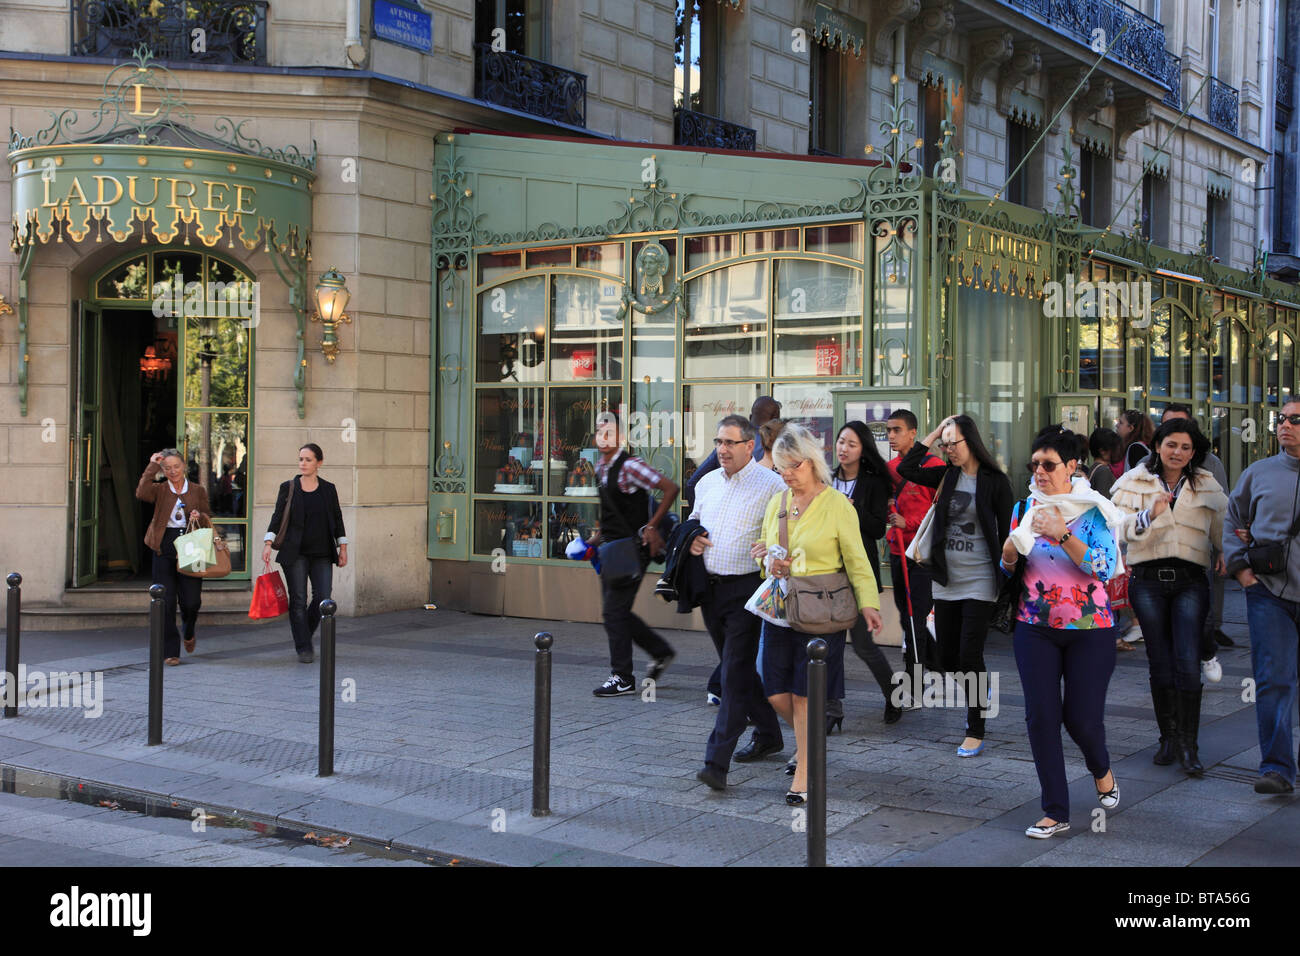 France, Paris, Champs Elysées, Laduree Cafe, people, Stock Photo